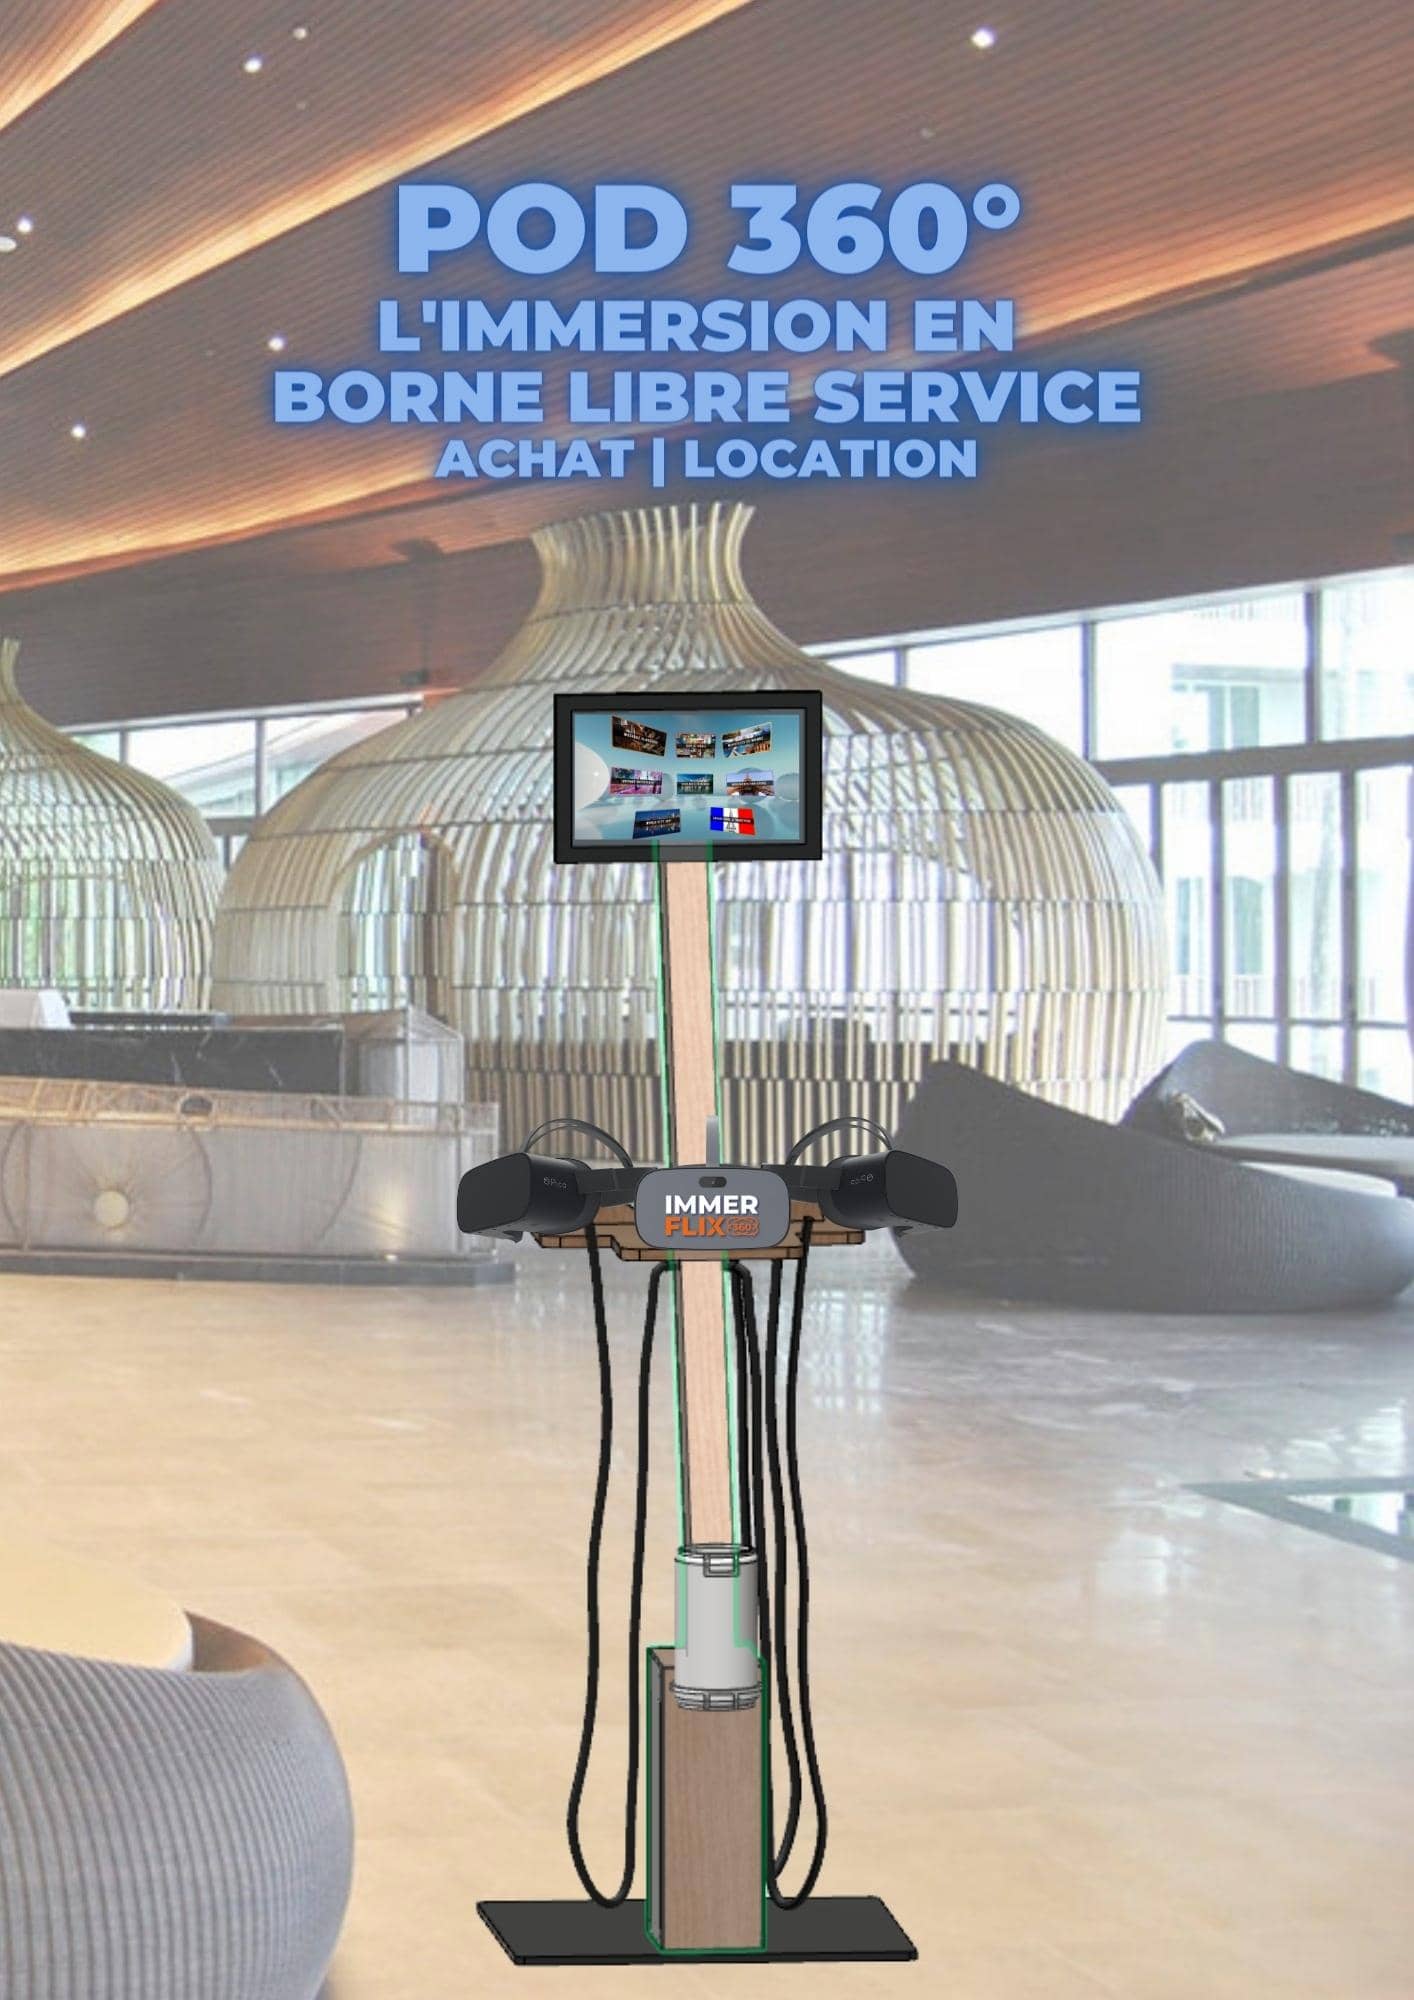 Pod 360° - borne libre service en réalité virtuelle